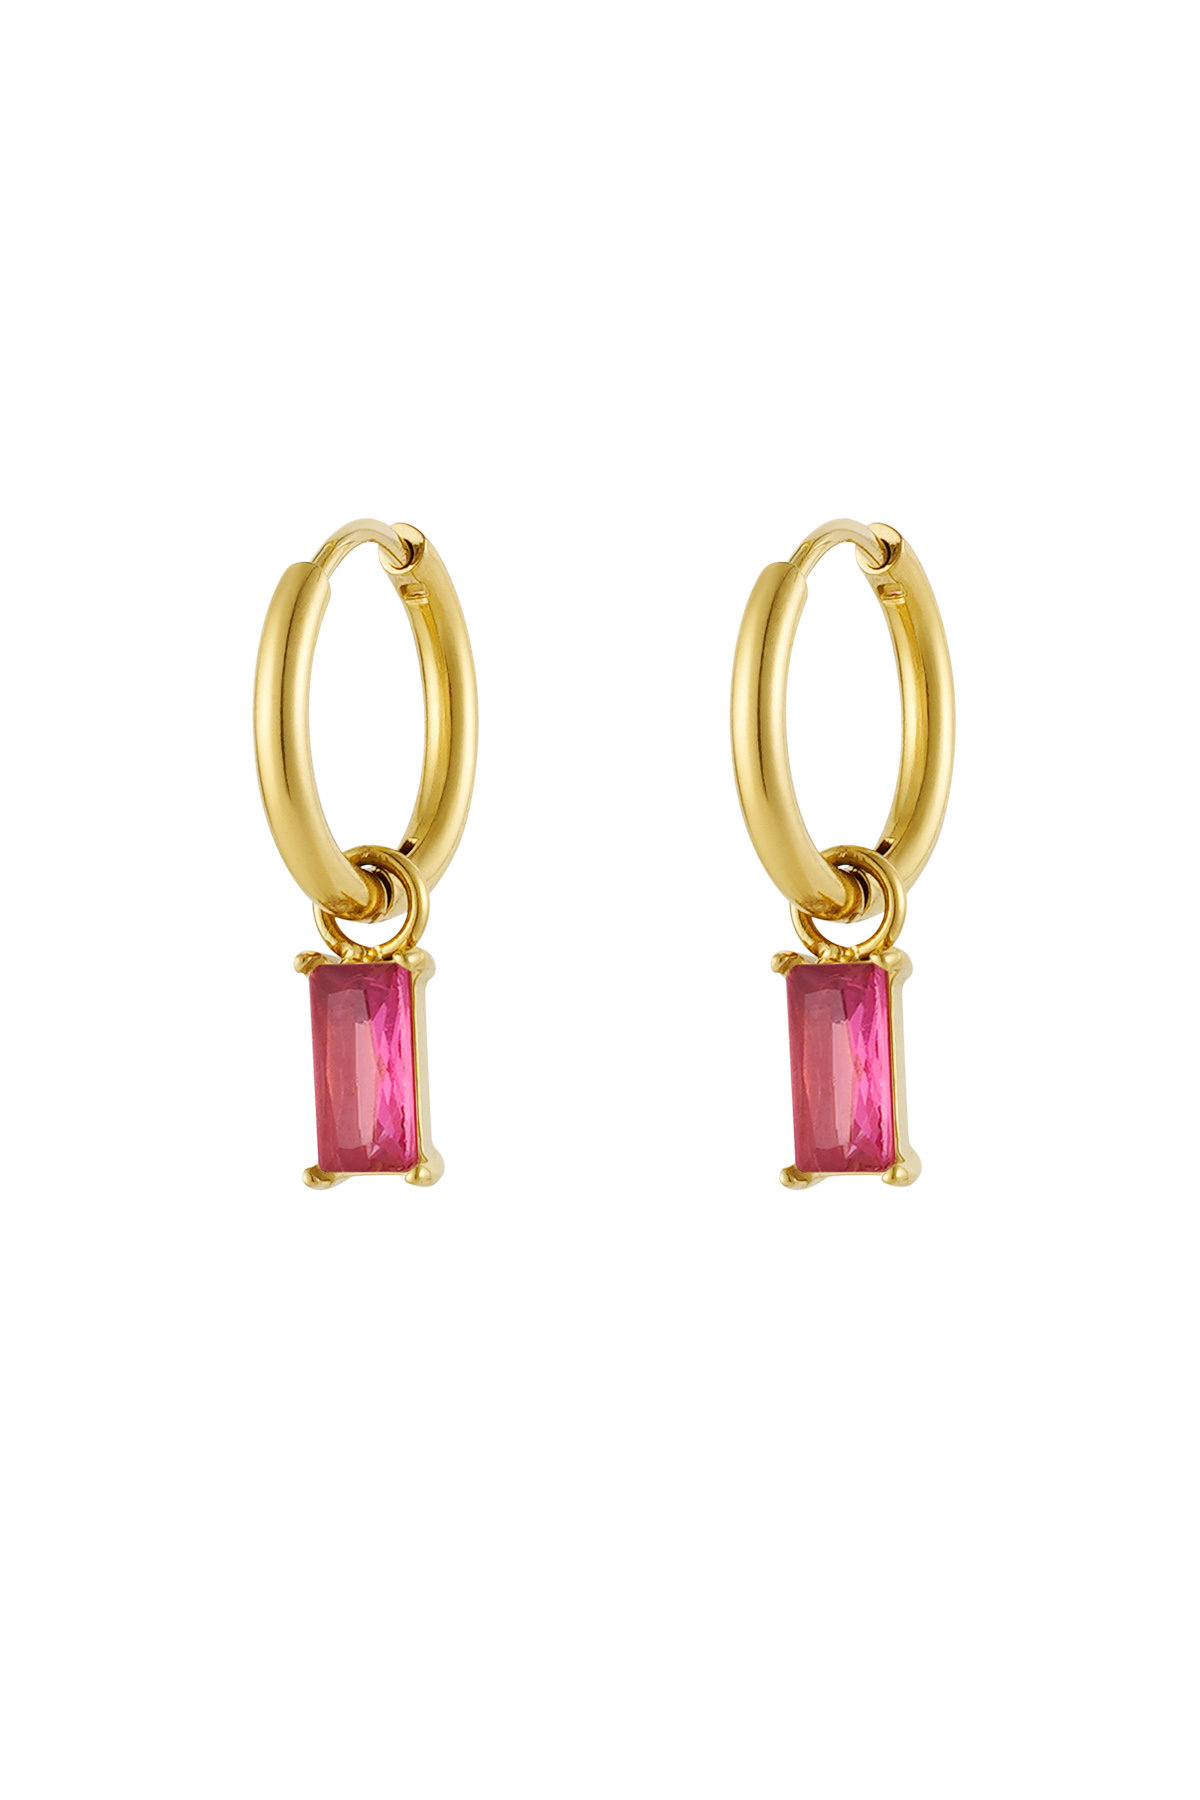 Oorbellen langwerpige steen - goud/roze h5 